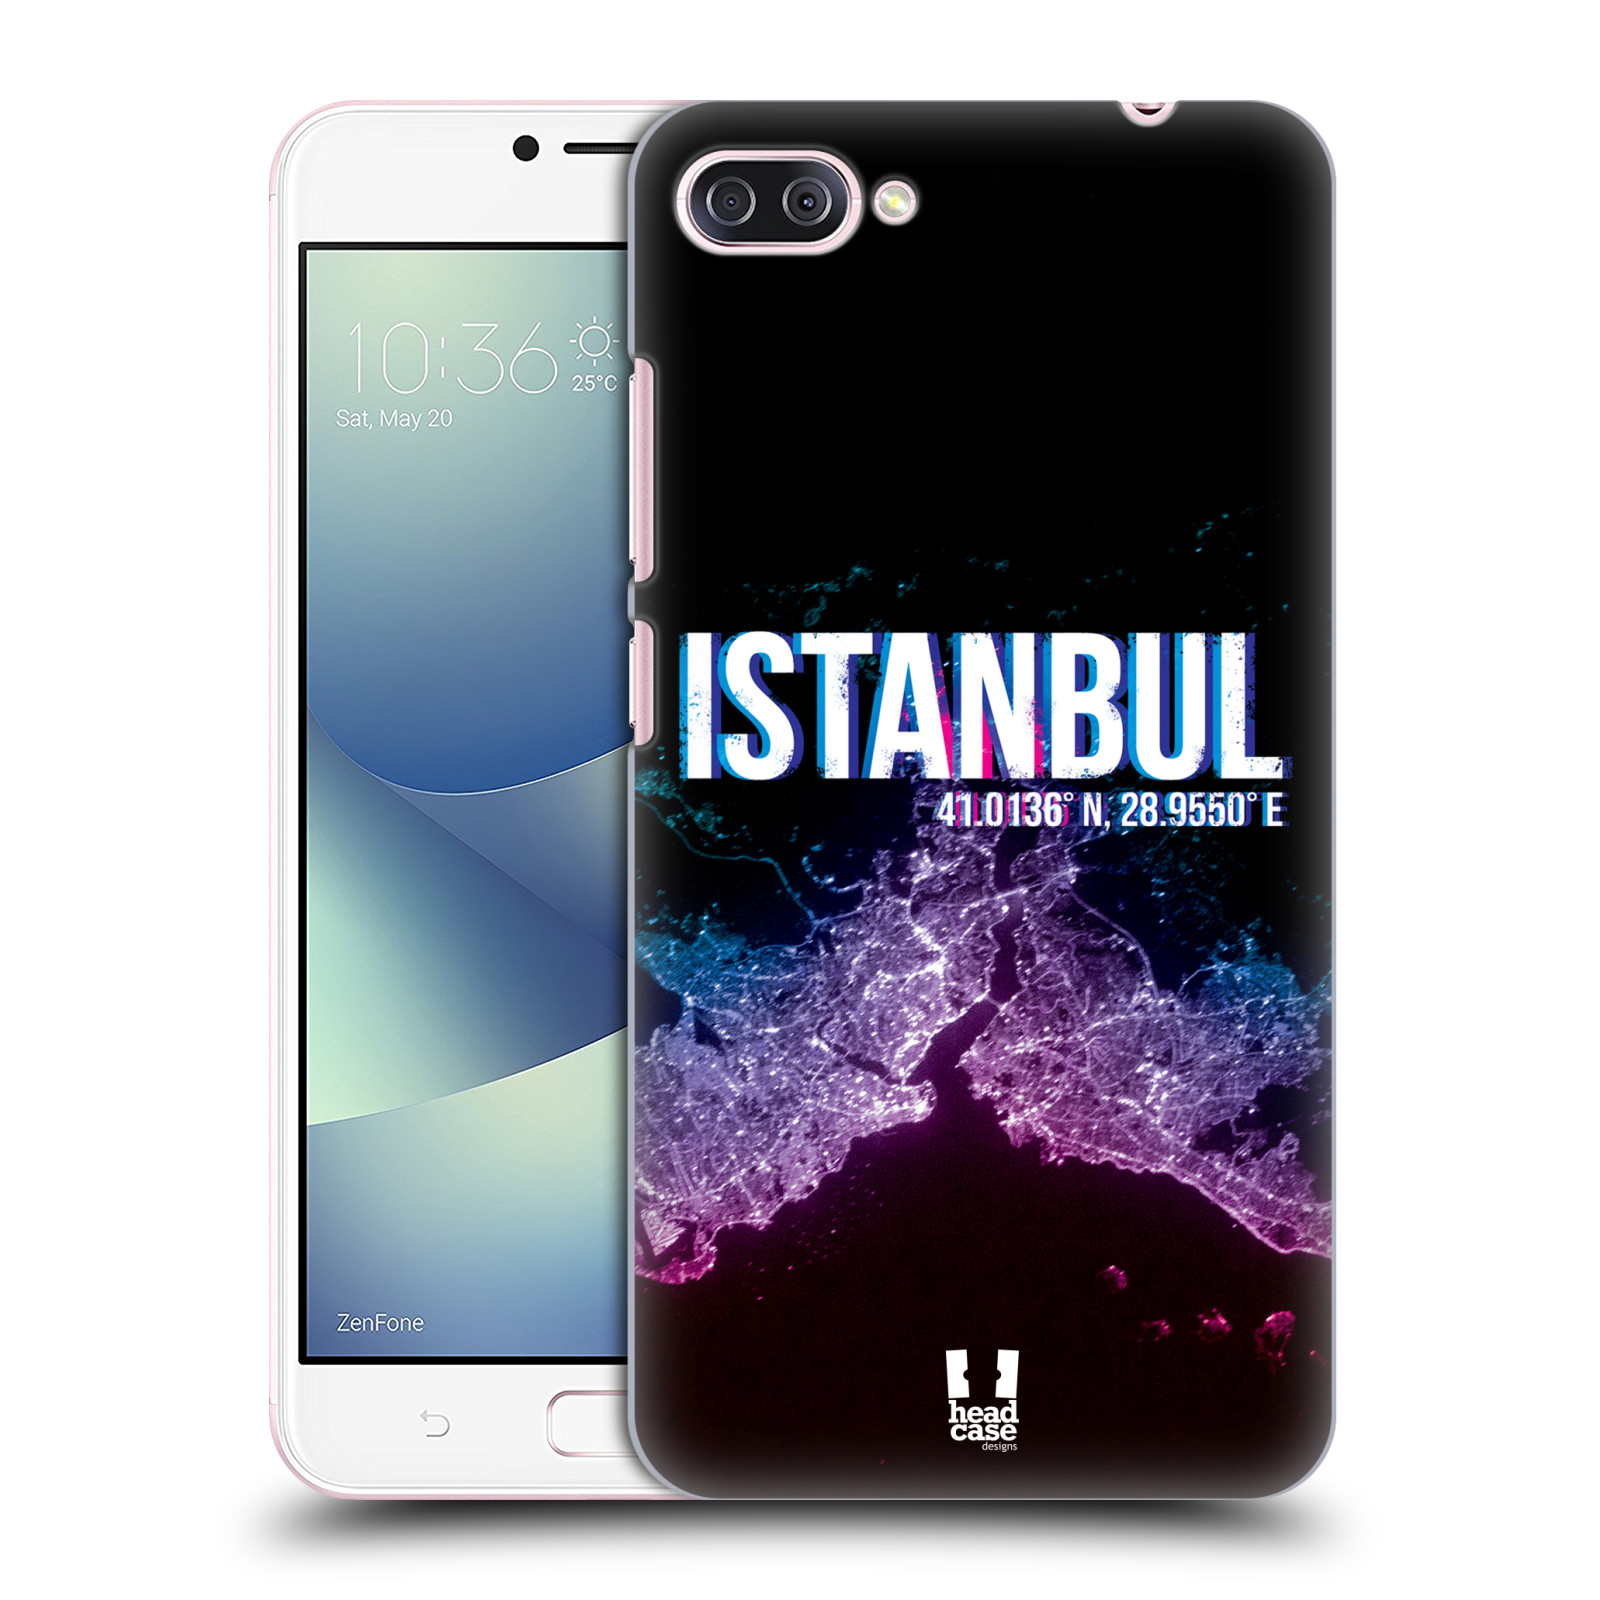 HEAD CASE plastový obal na mobil Asus Zenfone 4 MAX ZC554KL vzor Světla známých měst, Satelitní snímky TURECKO, ISTANBUL